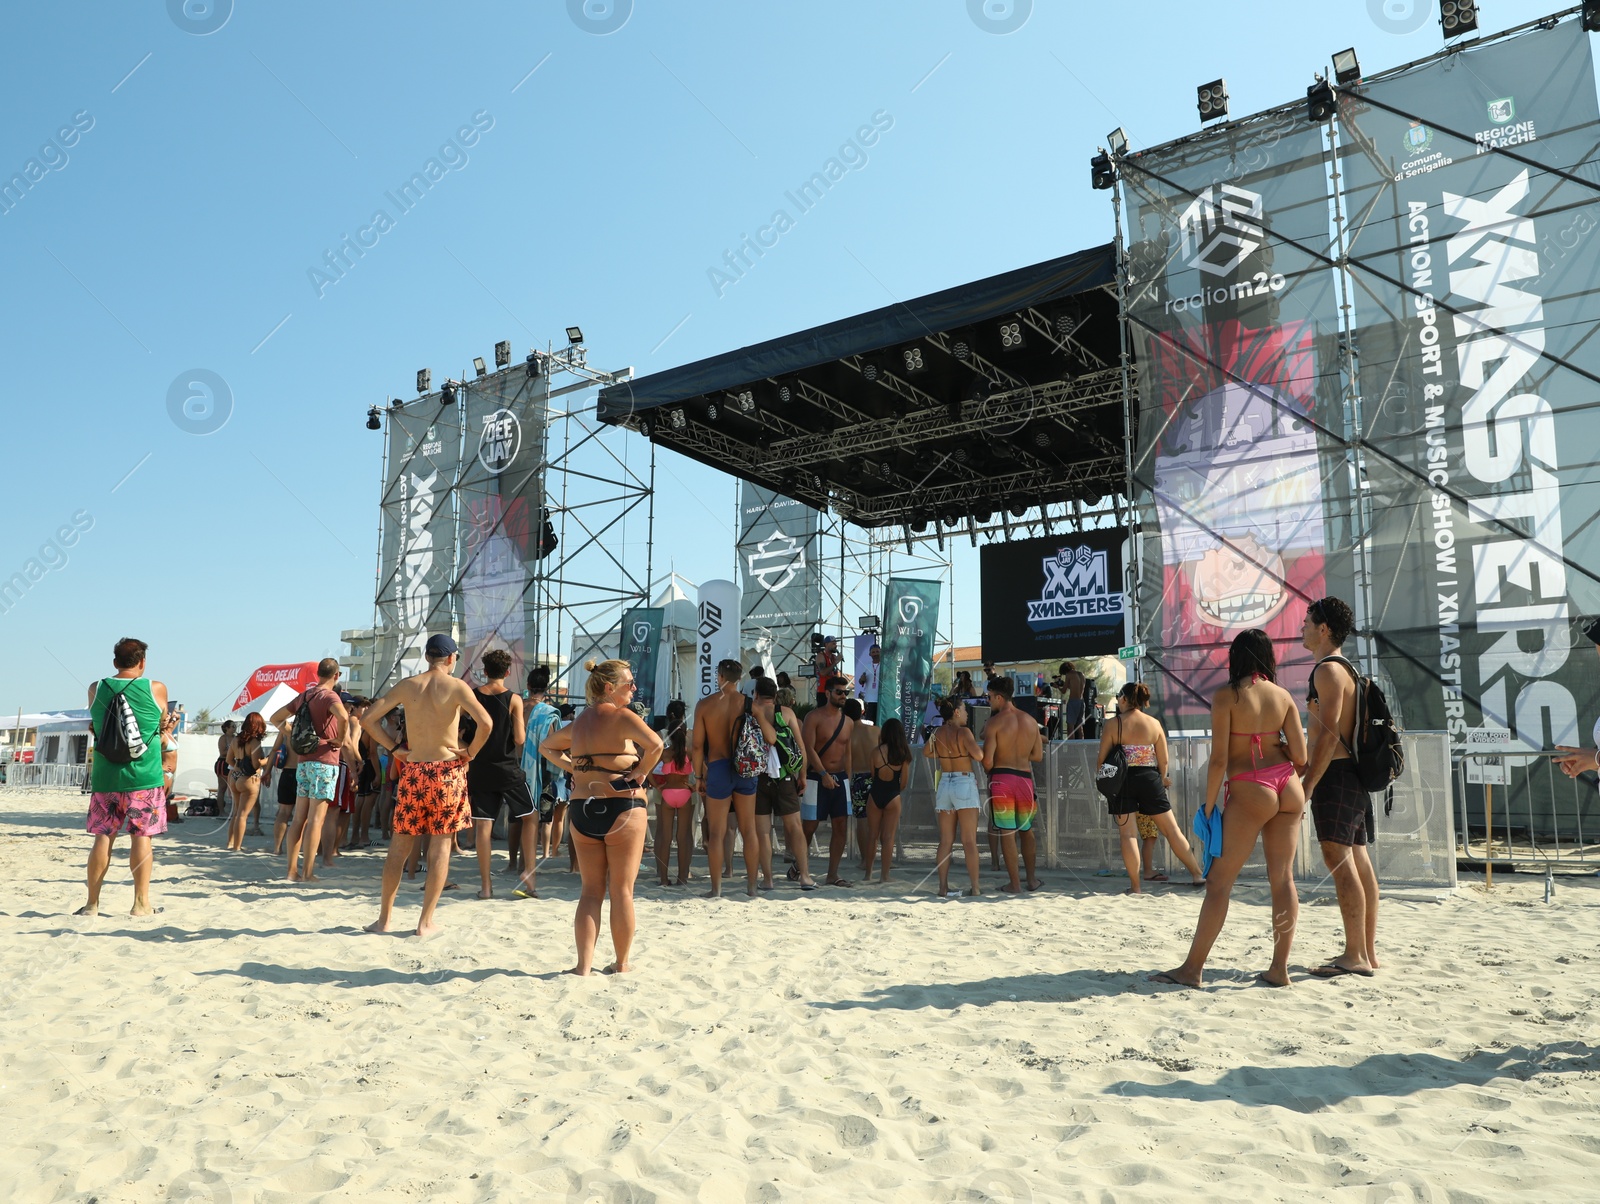 Photo of SENIGALLIA, ITALY - JULY 22, 2022: People enjoying music festival on beach